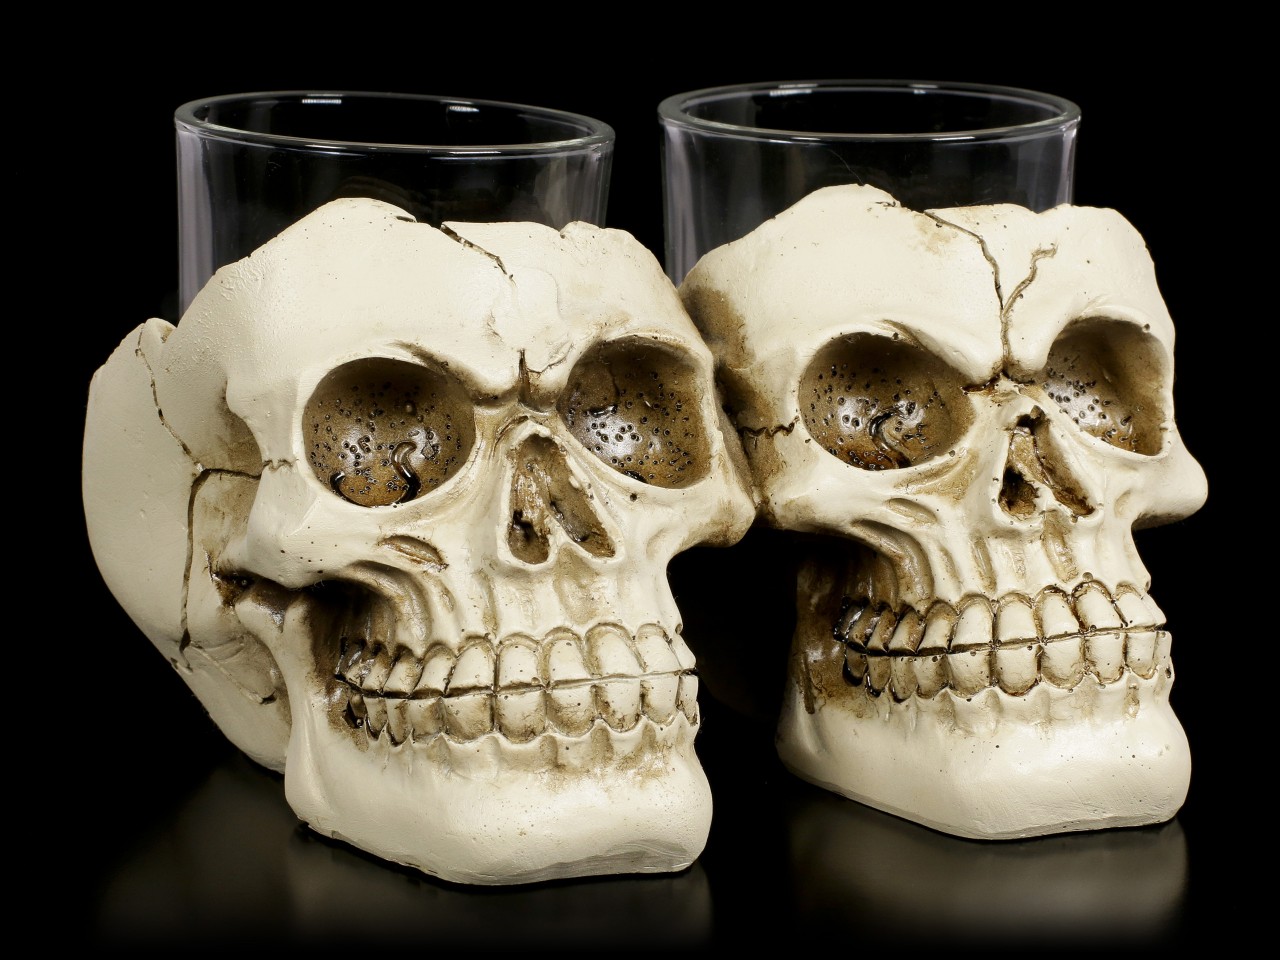 Shot Glasses with Skull - After Shot